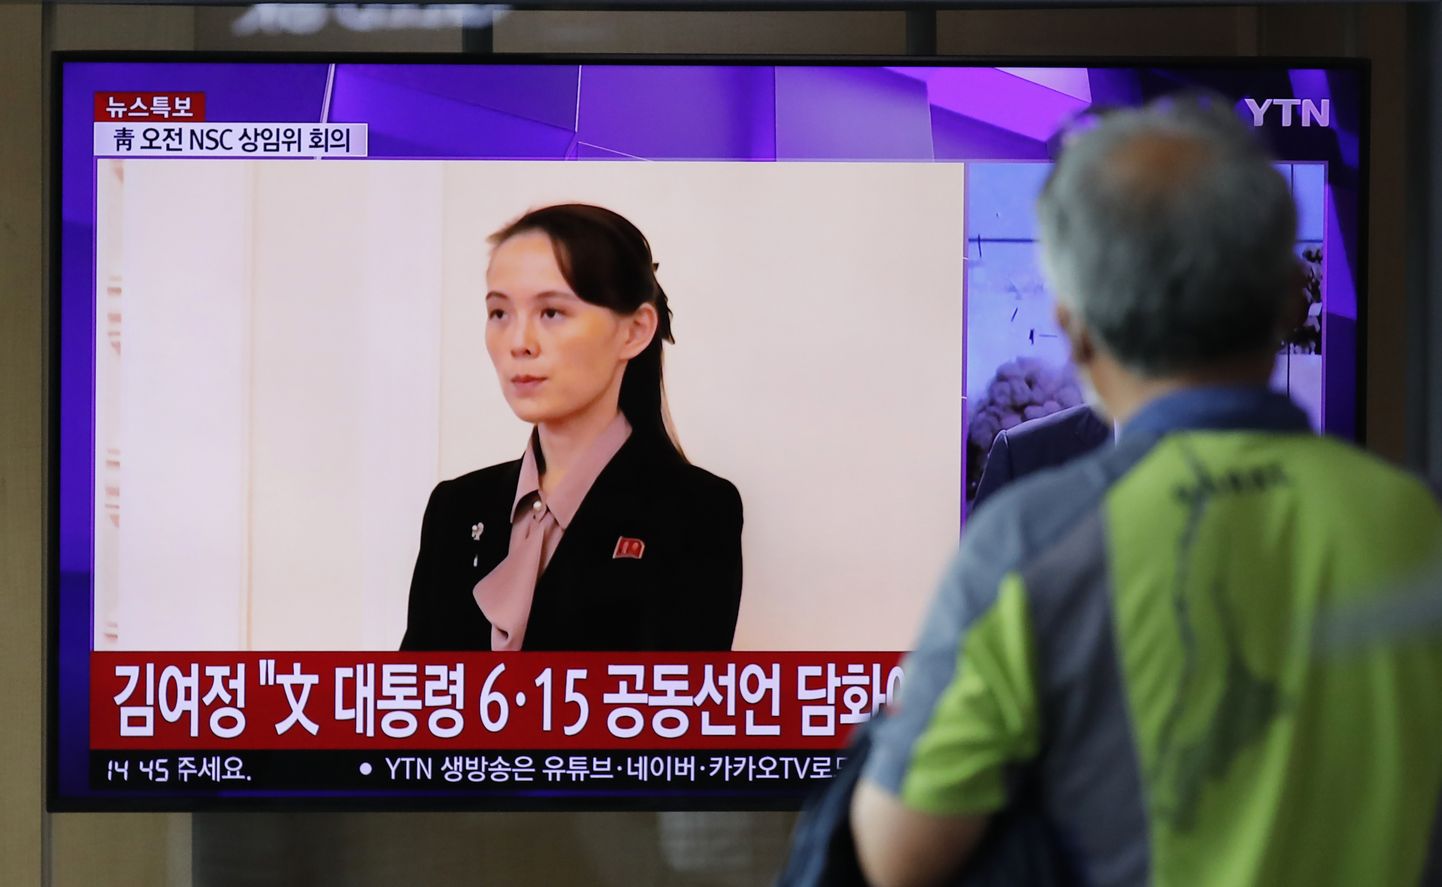 Lõunakorealane vaatab Souli raudtejaamas uudiseid, kus näidatakse Kim Jong-uni õde Kim Yo-jongi 17. juuni 2020.